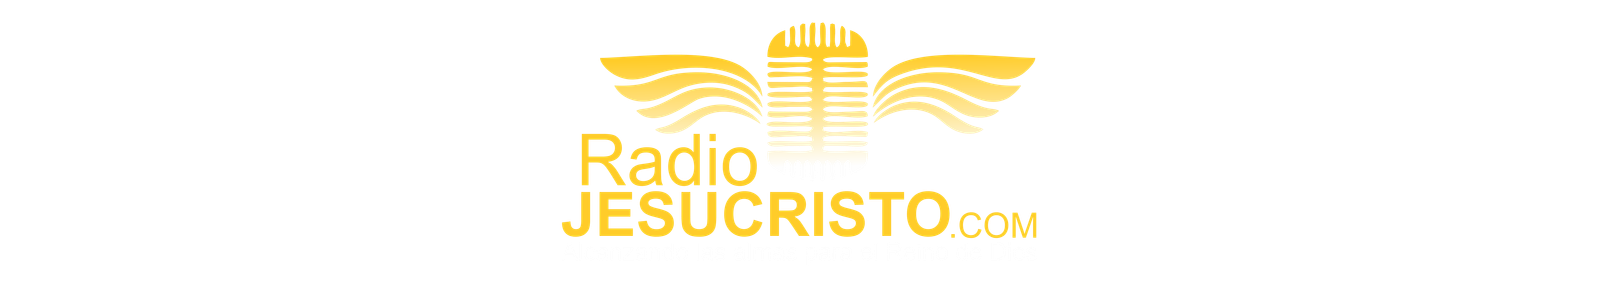 Radio Jesucristo